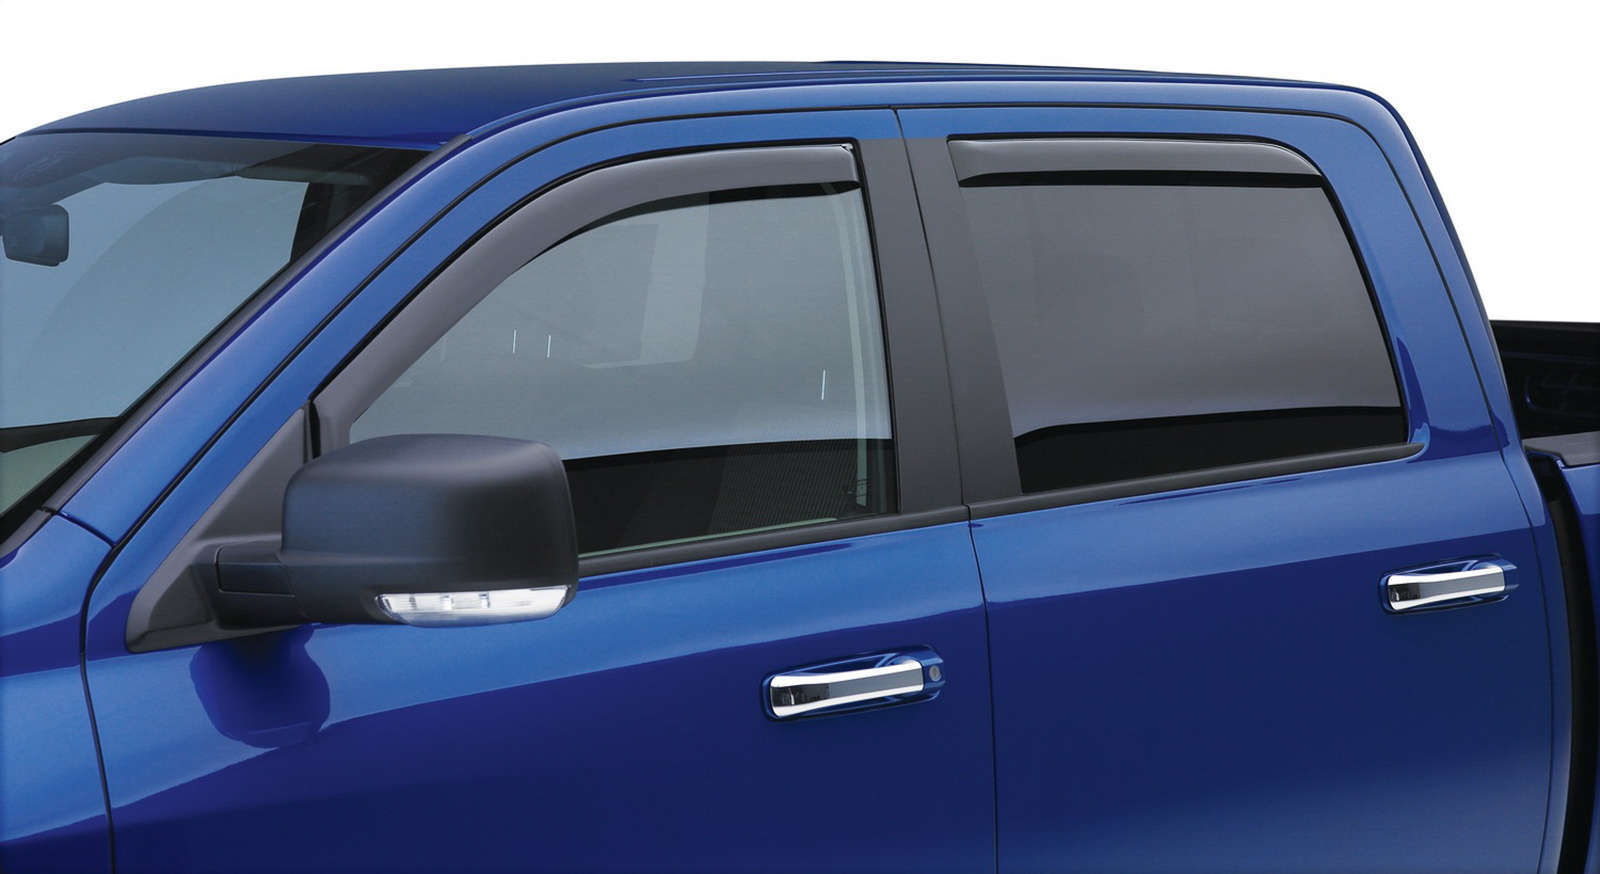 EGR in-channel window visors front & rear set dark smoke Extended Cab 2007 Chevrolet Silverado & GMC Sierra 1500 Classic, 2500HD, 3500HD 99-06 Chevrolet Silverado & GMC Sierra 1500, 2500HD, 3500HD